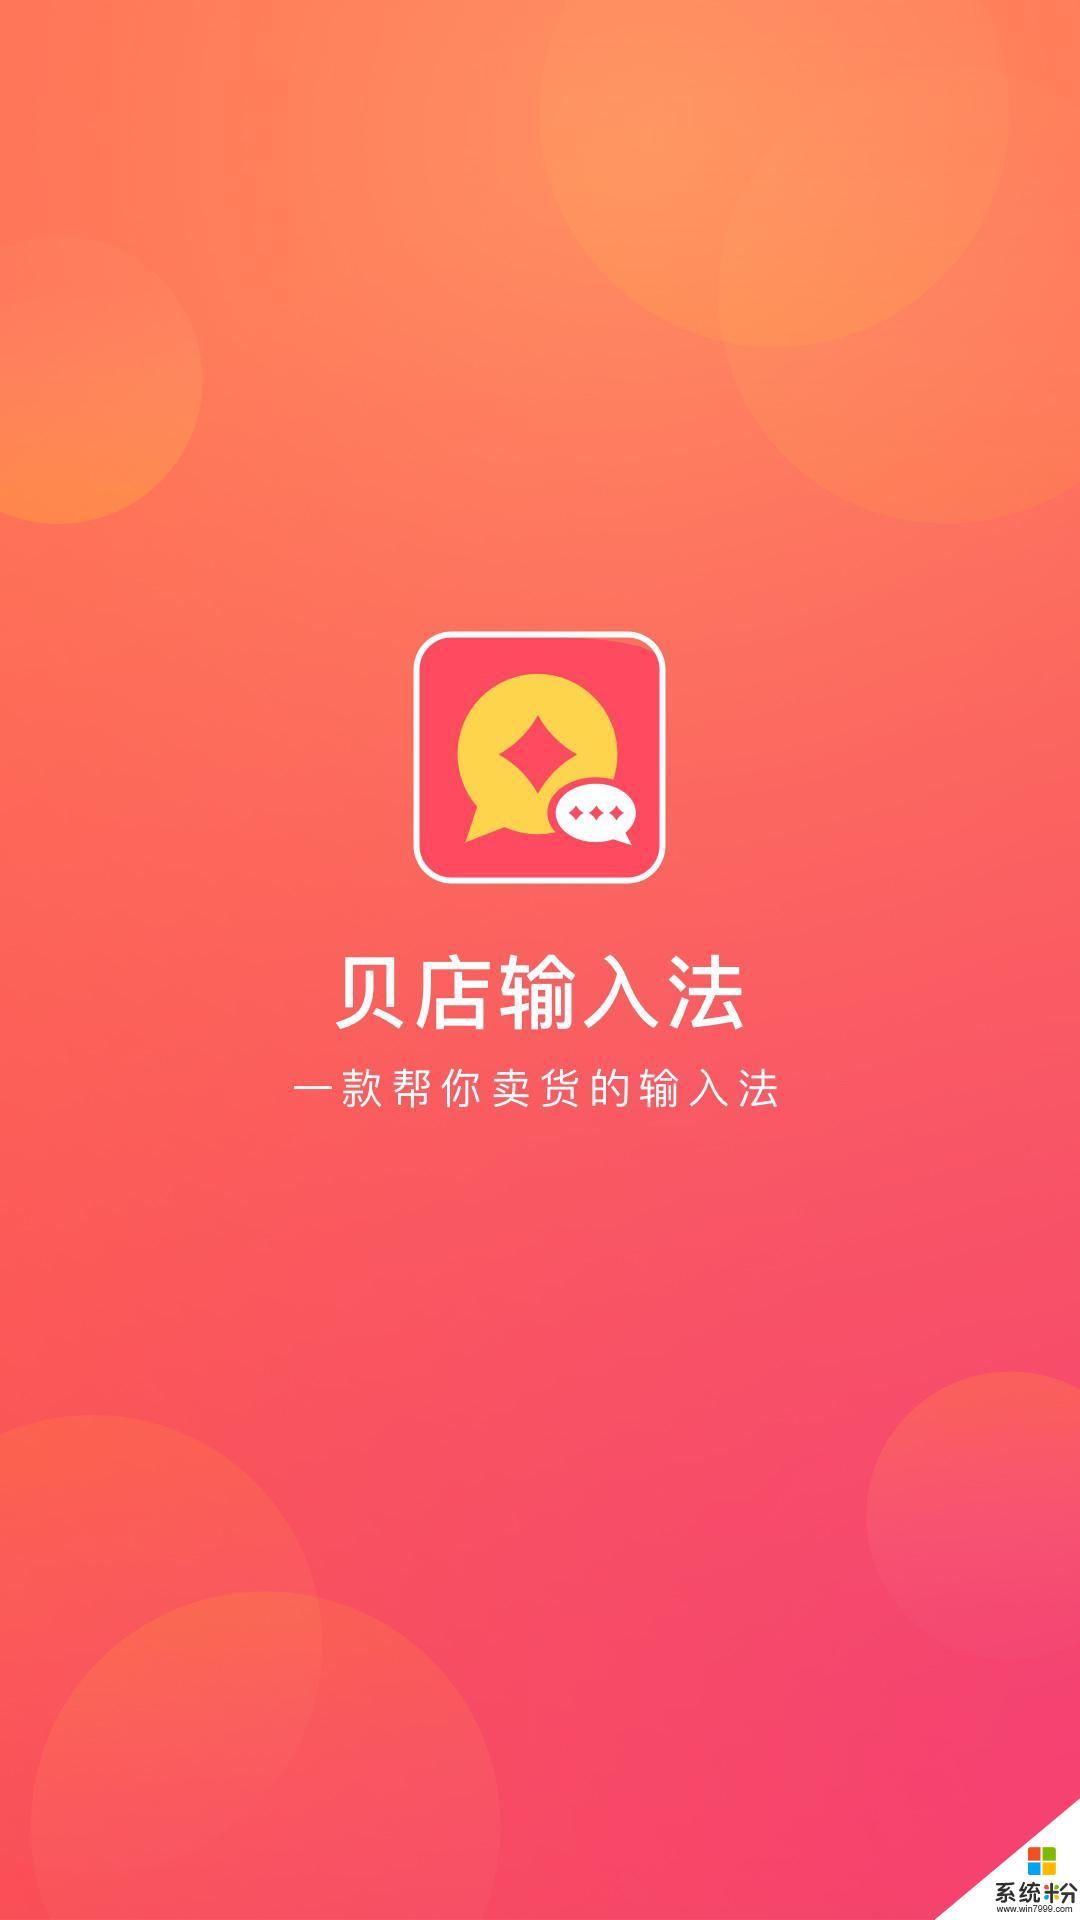 贝店输入法app官方下载_贝店输入法v1.0.10安卓版下载